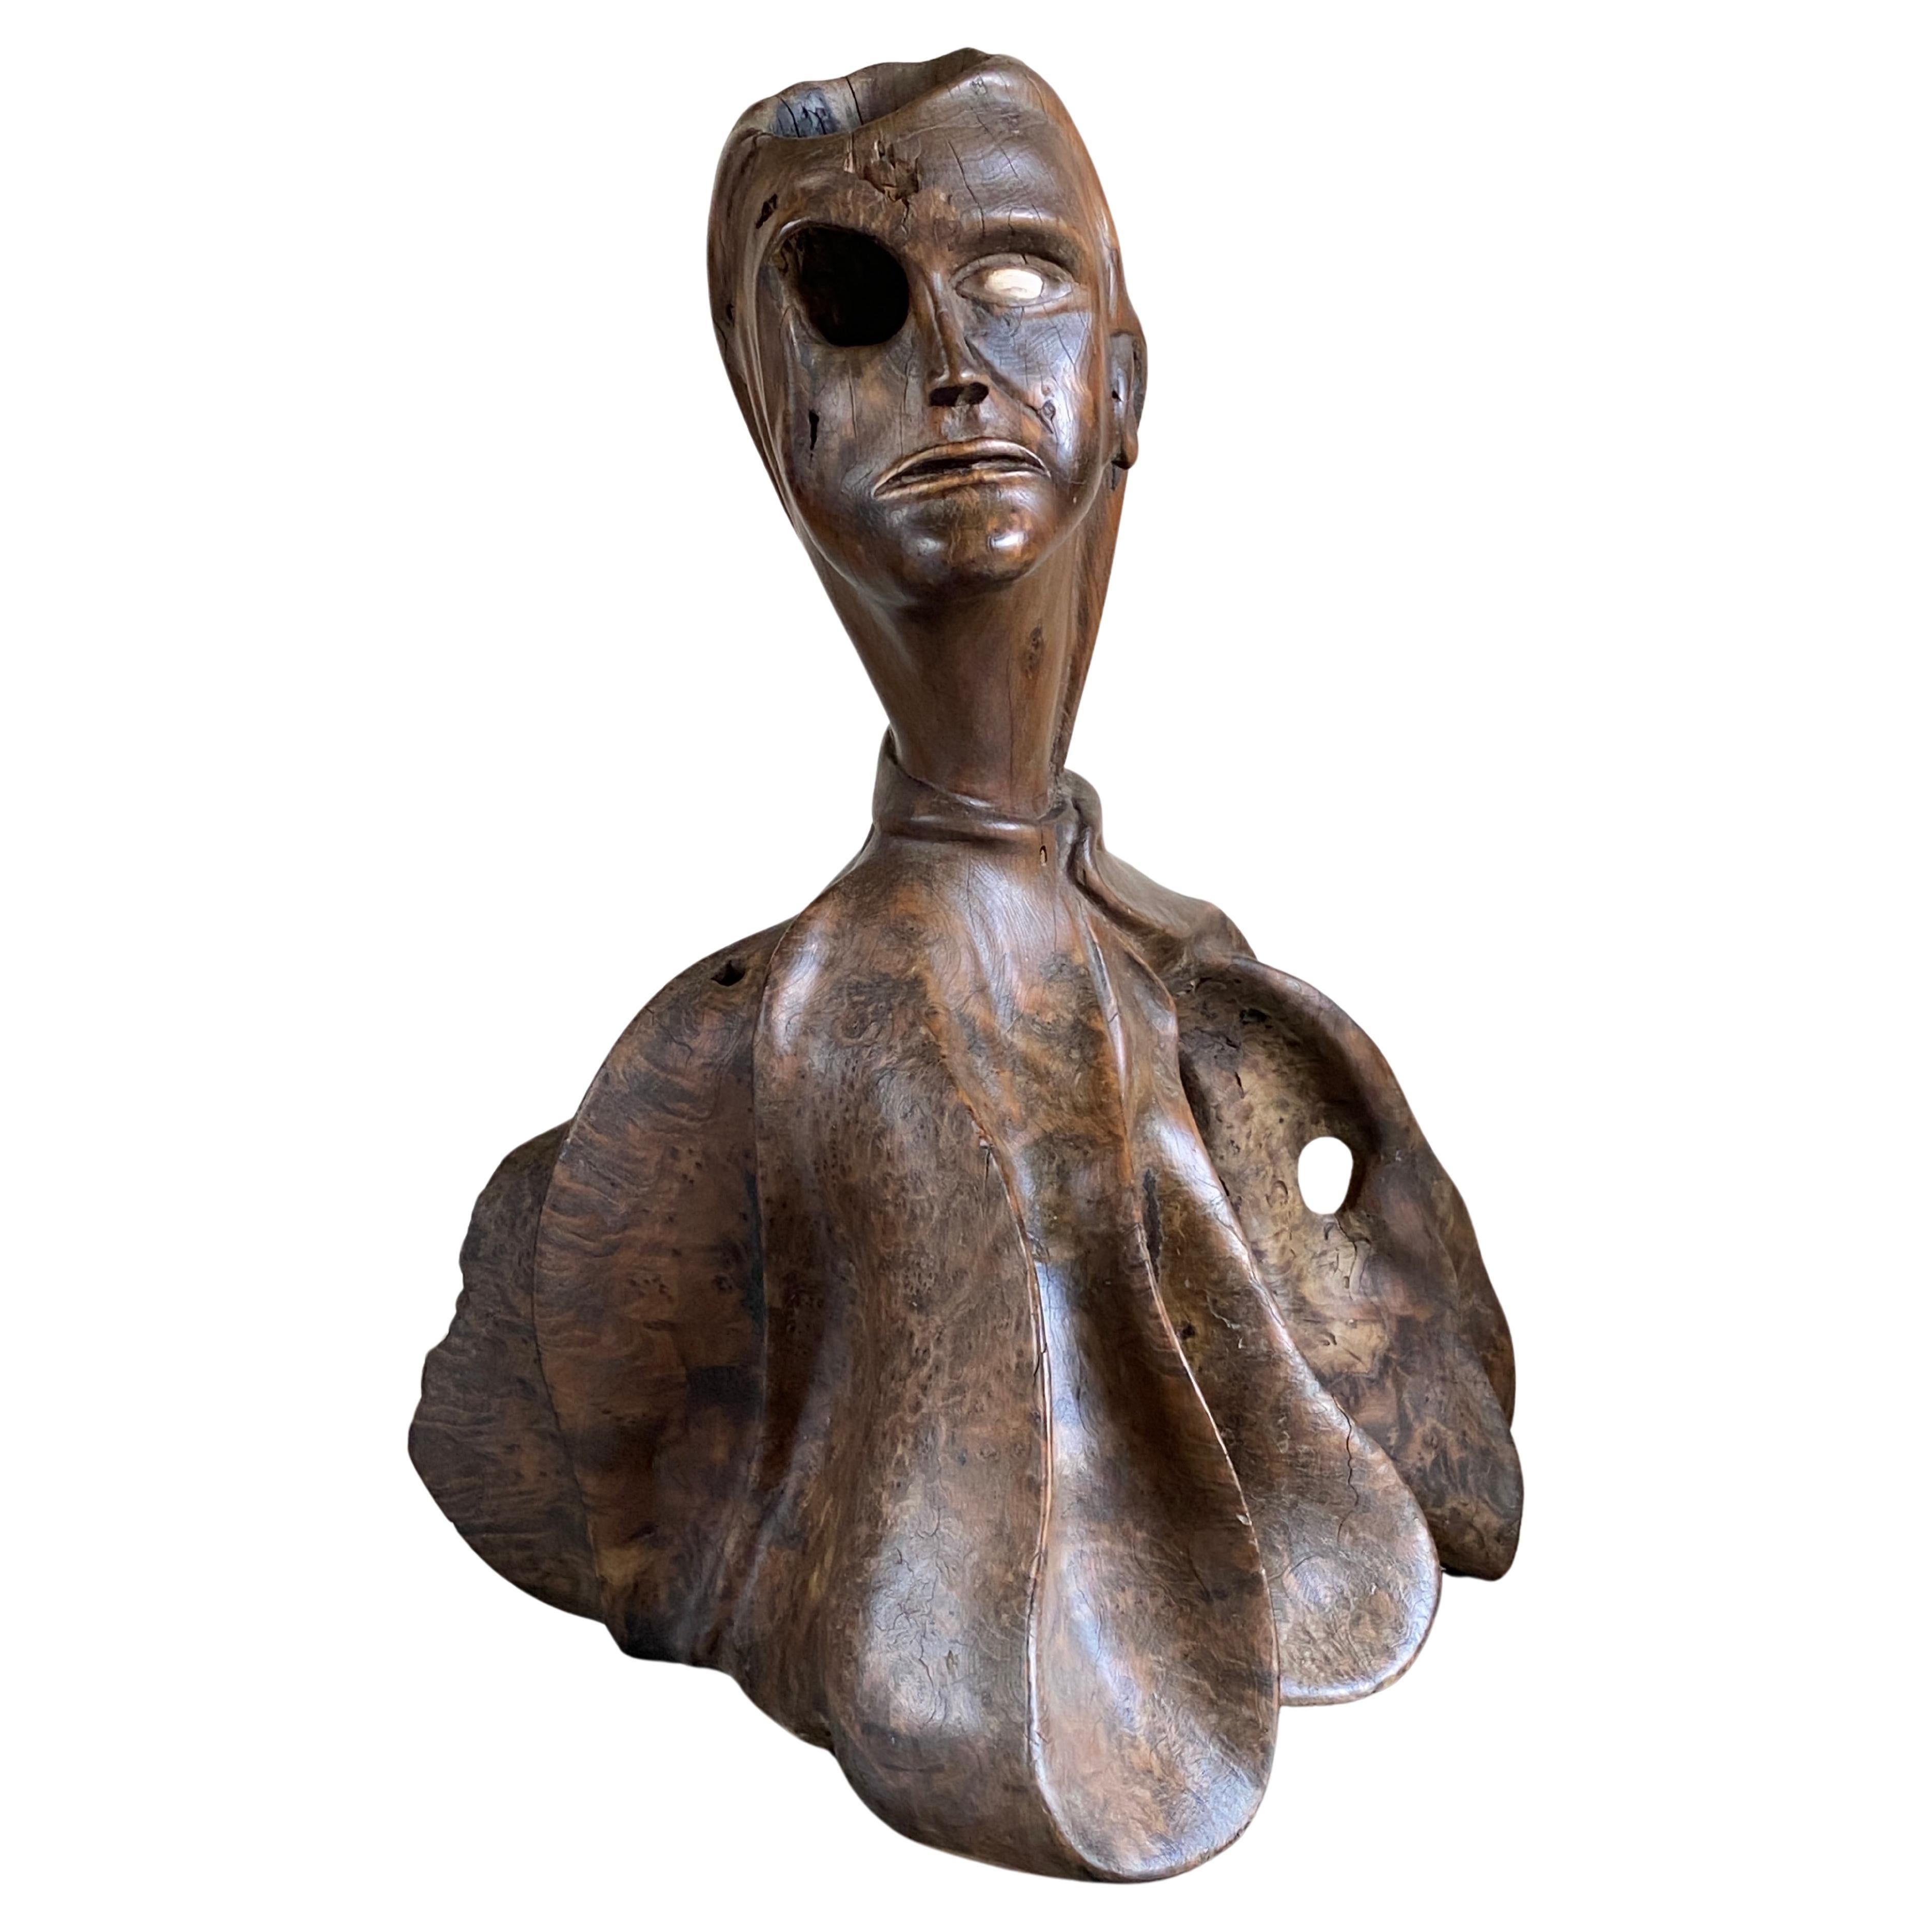 Volkskunst-Skulptur einer geschnitzten menschlichen Form aus Walnussholz in Lebensgröße